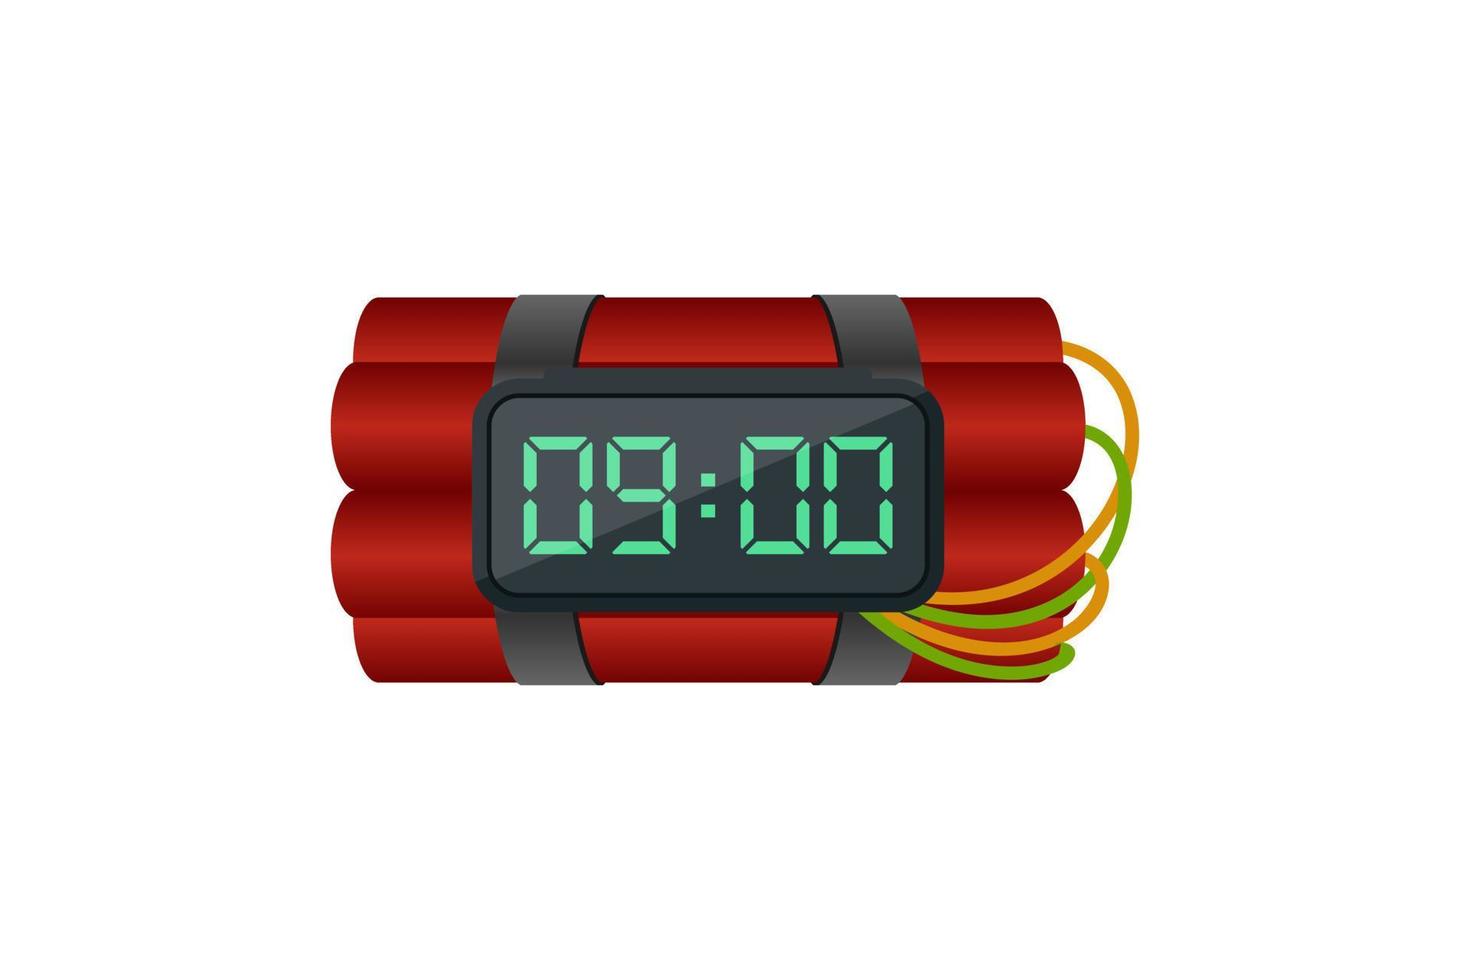 Bombe Dynamit und Countdown Digital Uhr Vektor Design auf Weiß Hintergrund